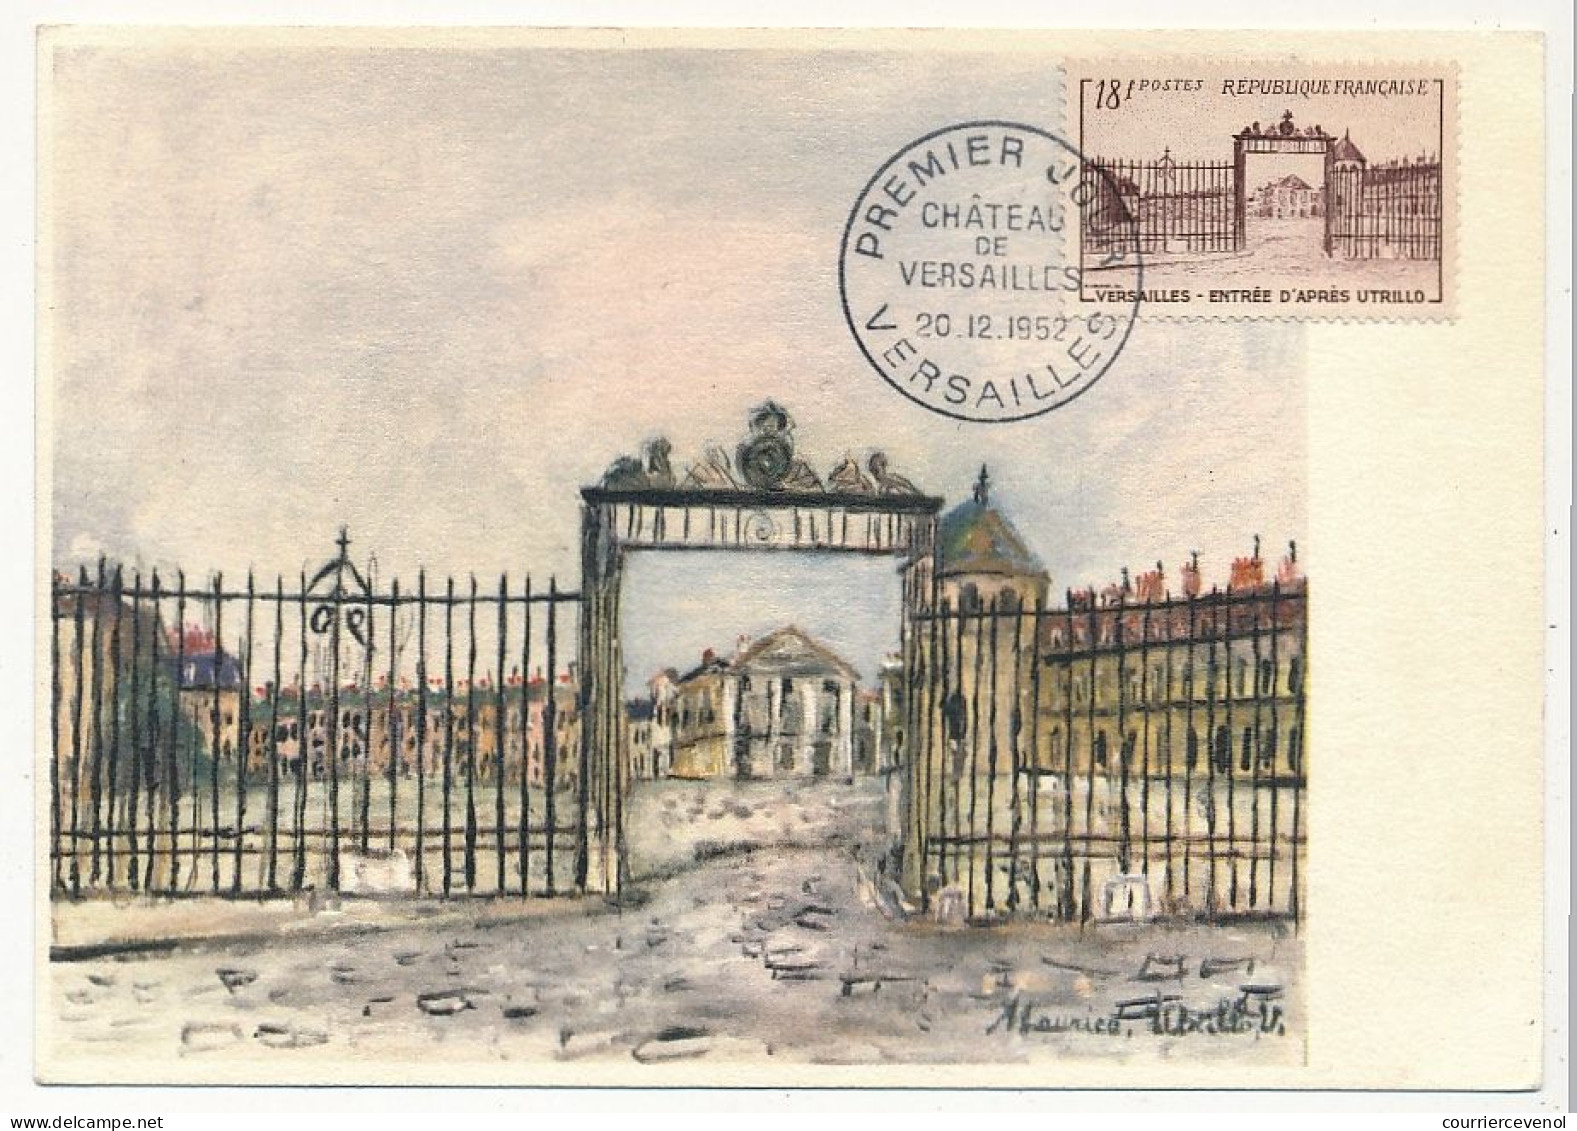 FRANCE => Carte Maximum => 18F Château De Versailles, Entrée (Utrlllo) - 20/12/1952 - Versailles - 1950-1959